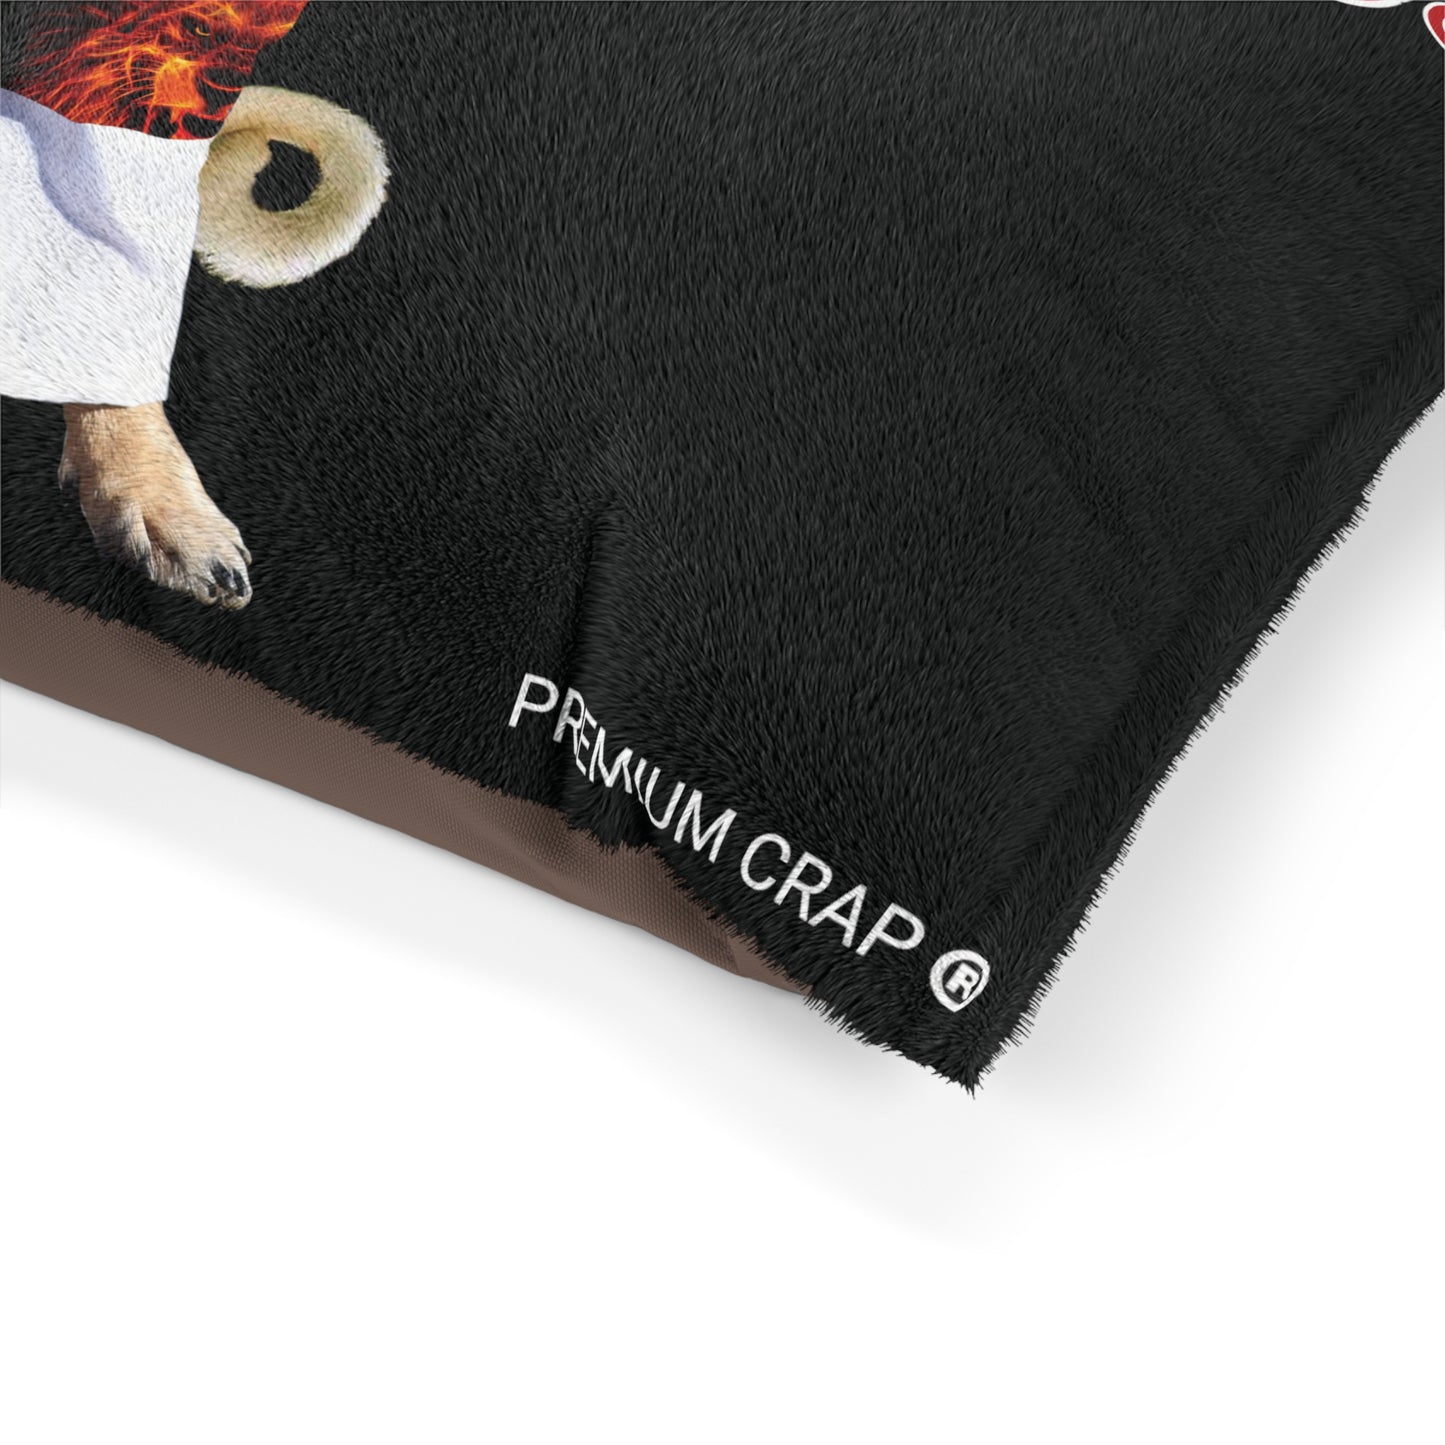 Premium Crap Pet Bed